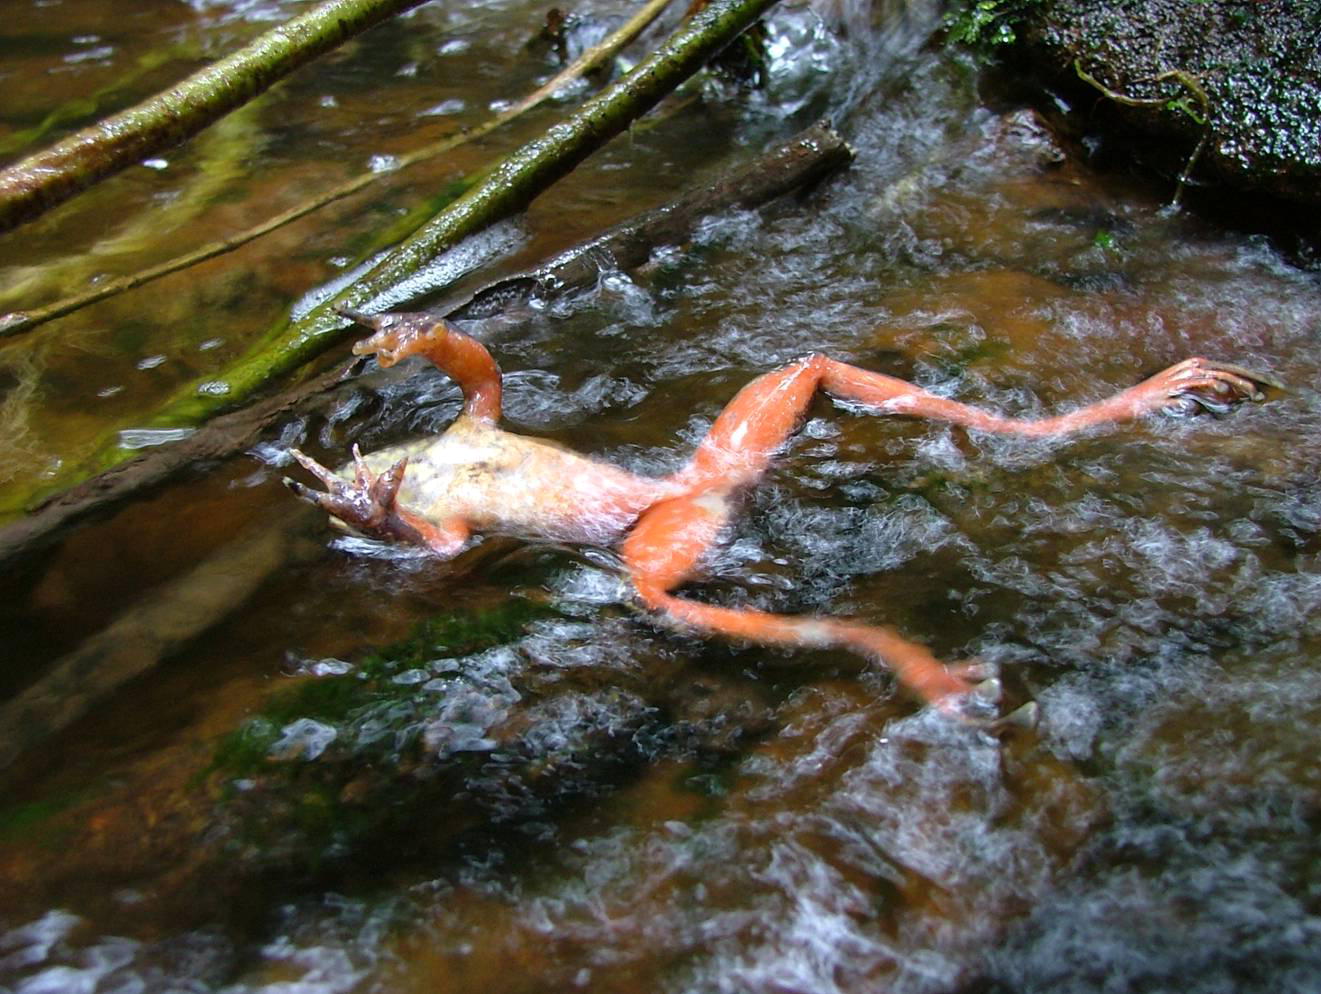 Toter Frosch im Wasser